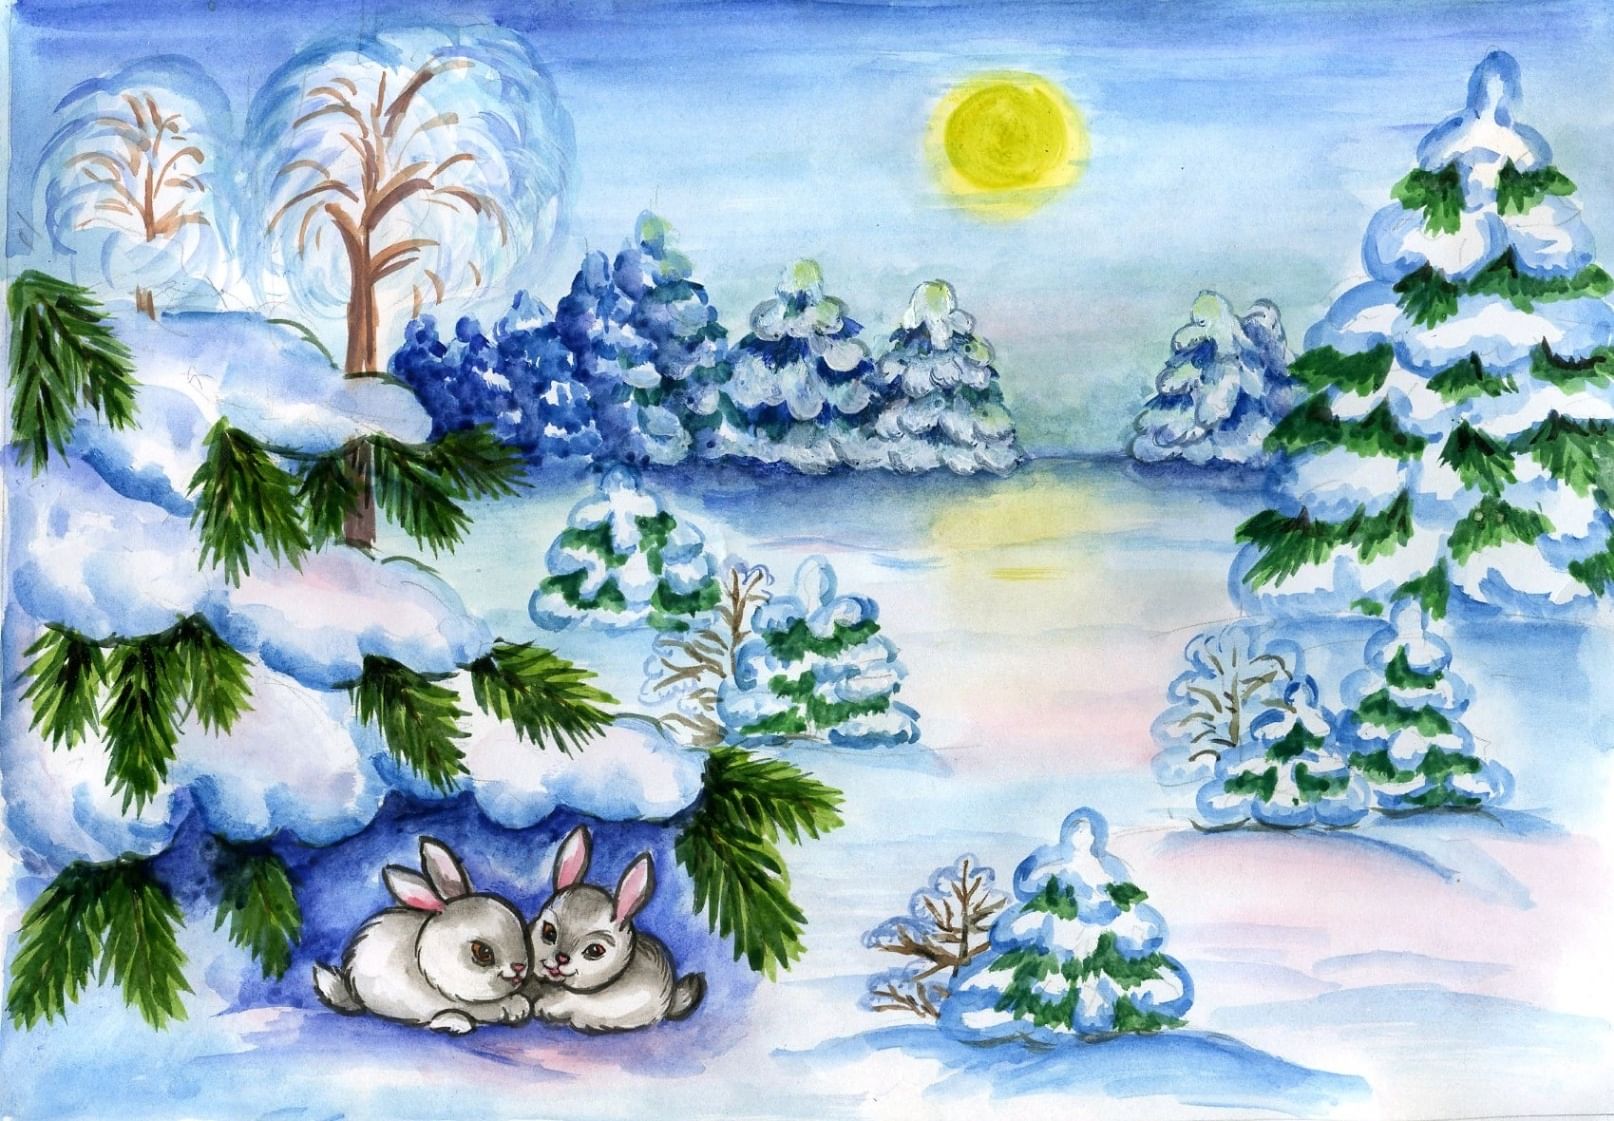 В Кызыле стартовал открытый онлайн-конкурс рисунков на снегу «Зимняя сказка»